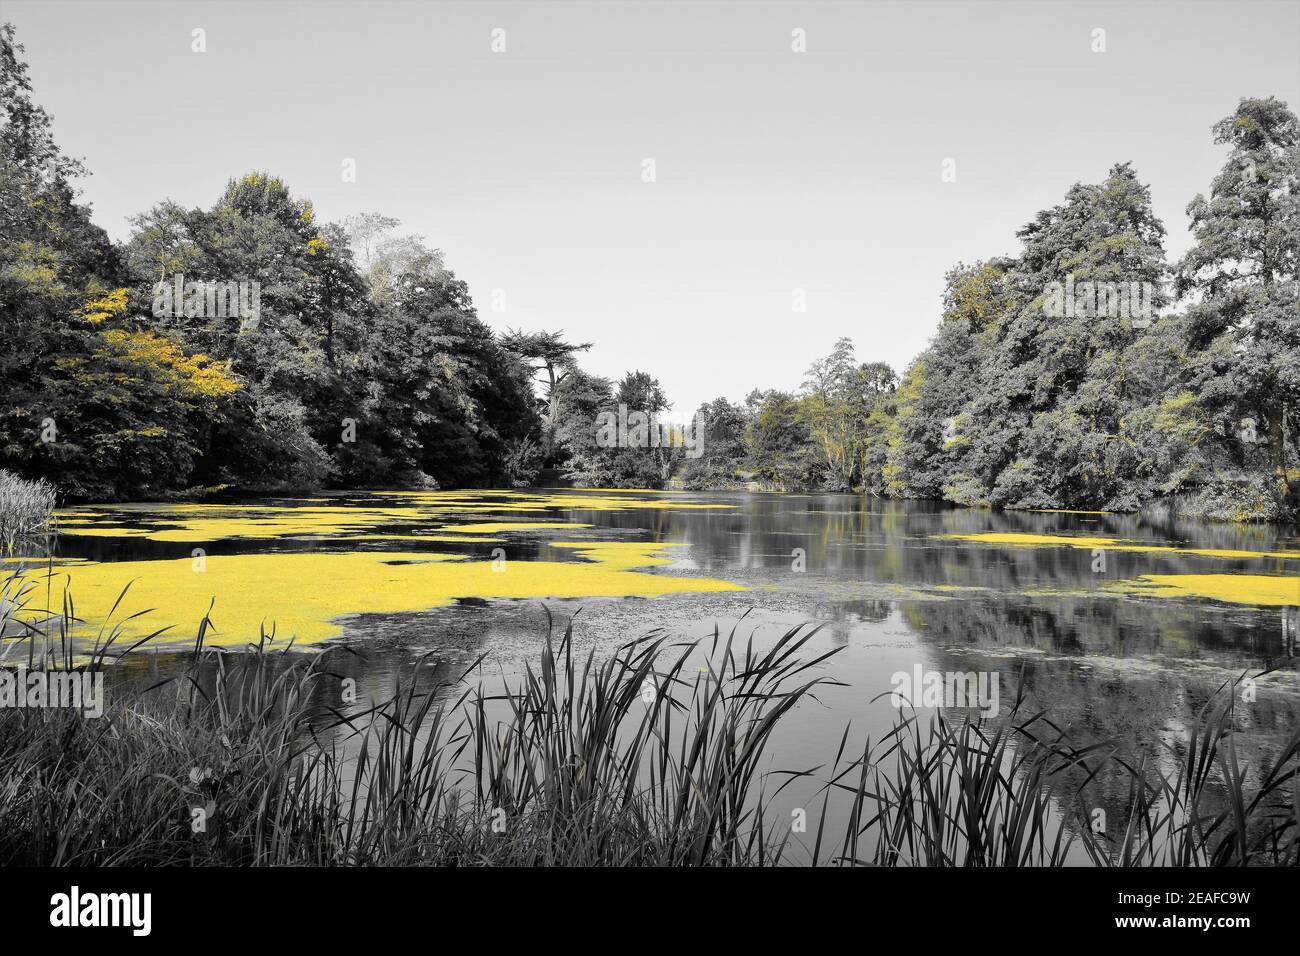 Paysage : petit lac anglais avec algues entourées d'arbres et de graminées à travers le filtre jaune Banque D'Images